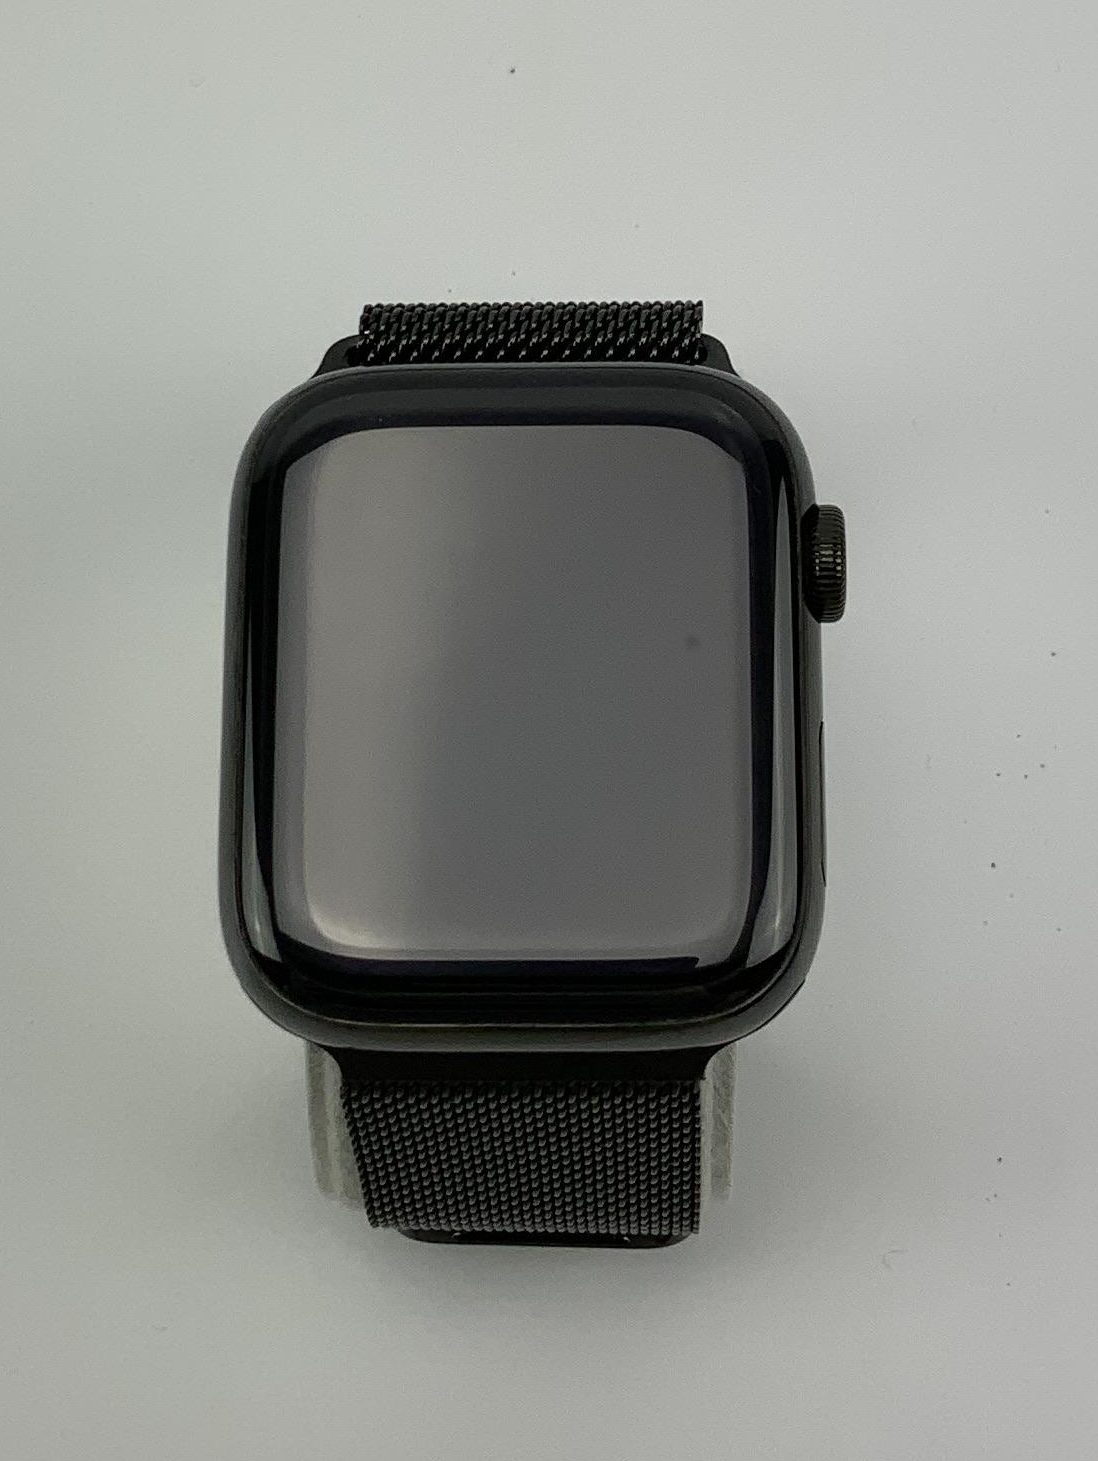 Watch Series 4 Steel Cellular (44mm), Space Black, Space Black Milanese Loop, bild 1